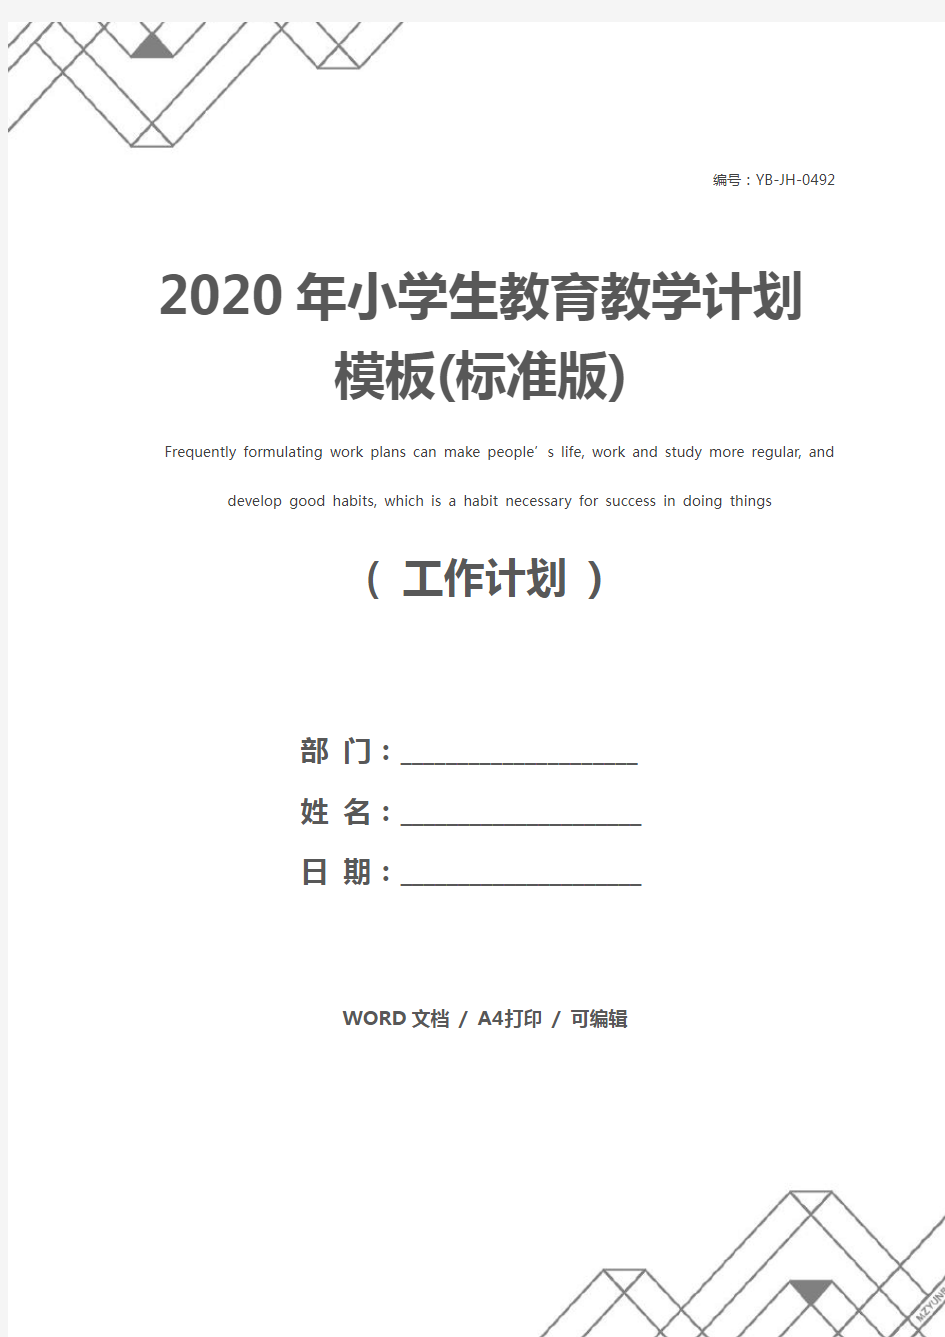 2020年小学生教育教学计划模板(标准版)